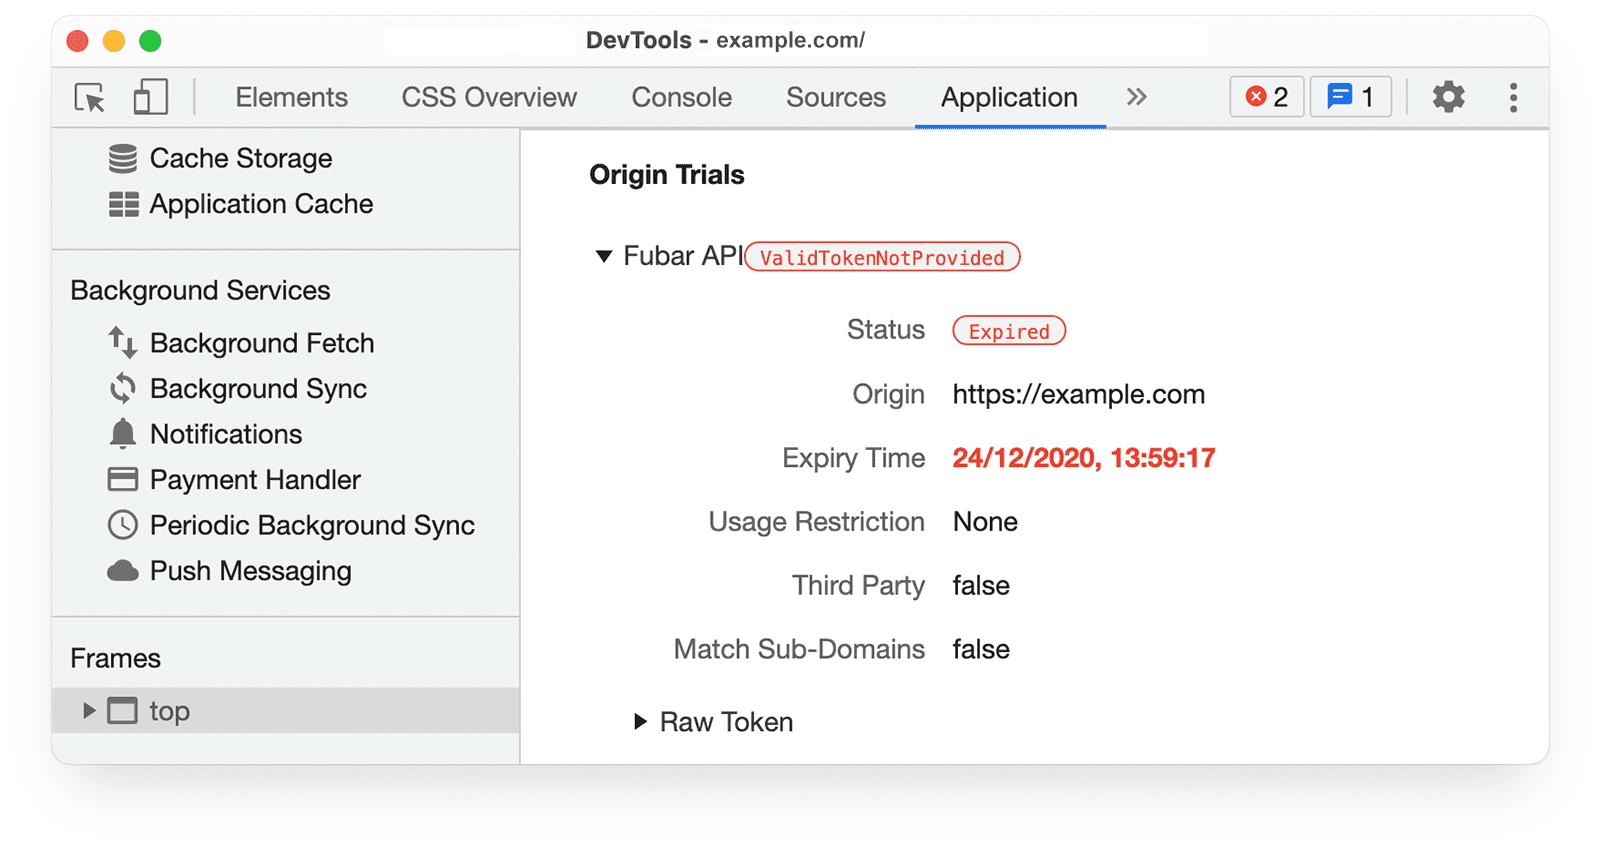 Narzędzia deweloperskie w Chrome 
informacje o testach origin w panelu aplikacji z wyróżnionym statusem: sukces.